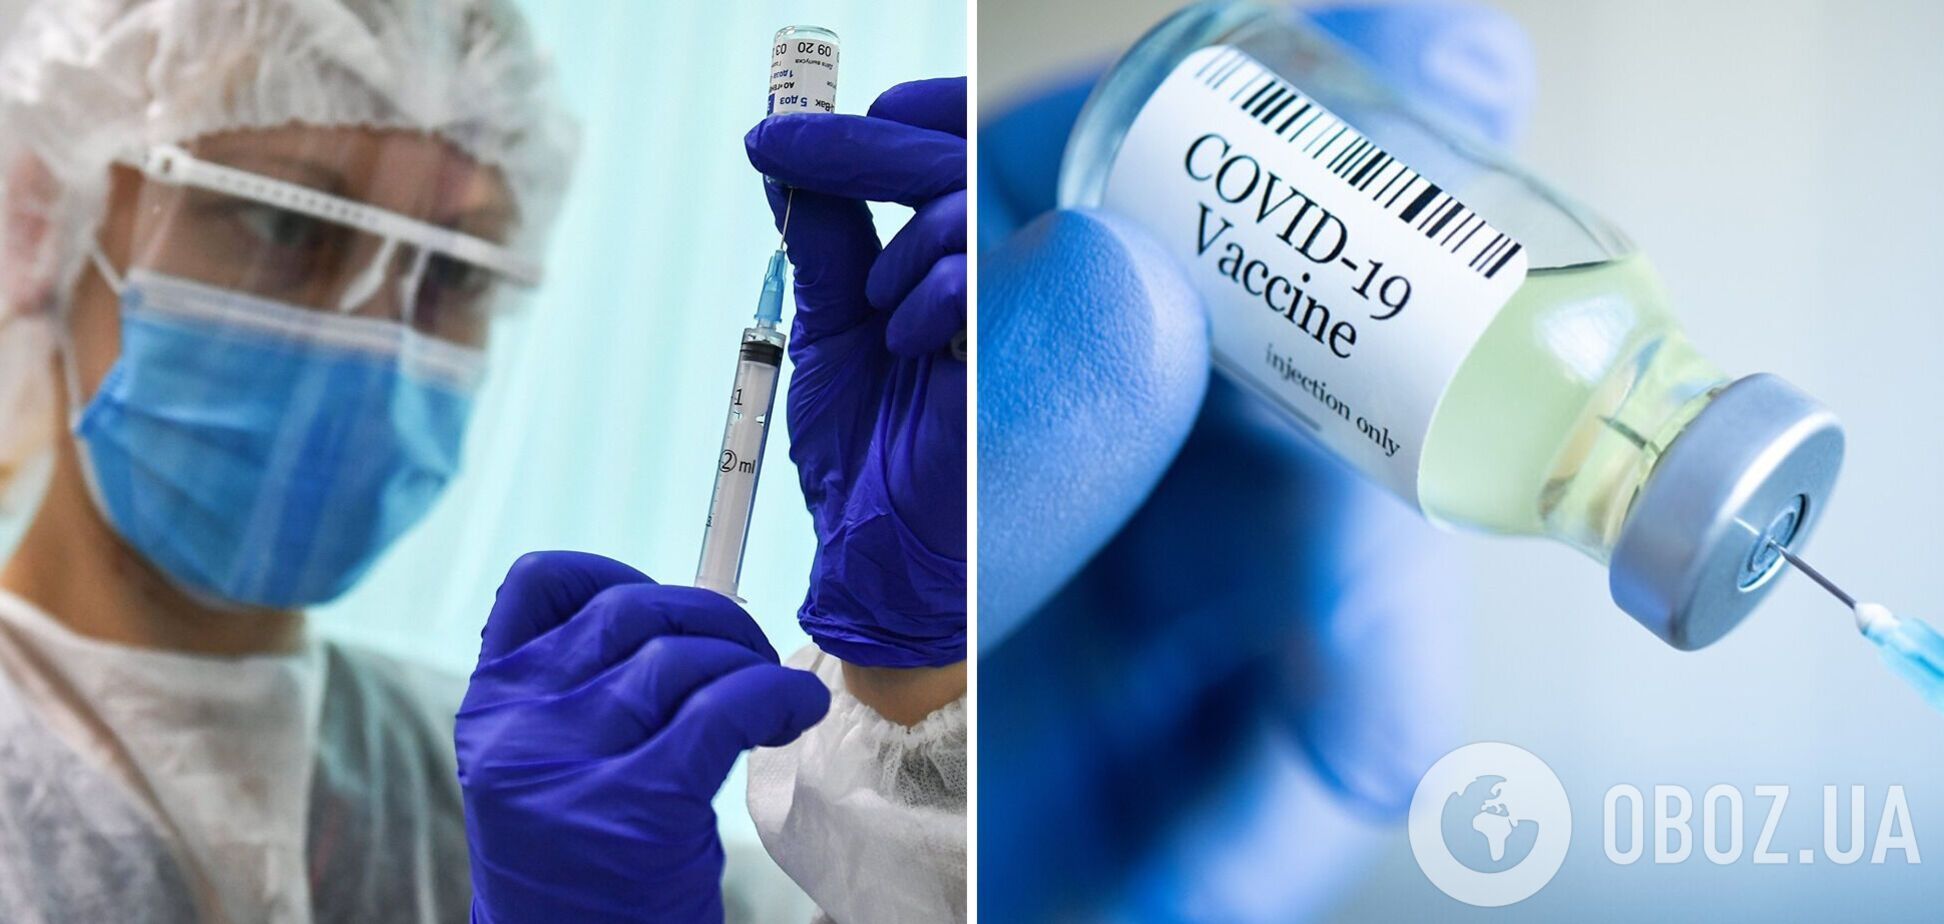 Коронавирус никуда не исчез: врач-иммунолог призвал получить бустерную прививку